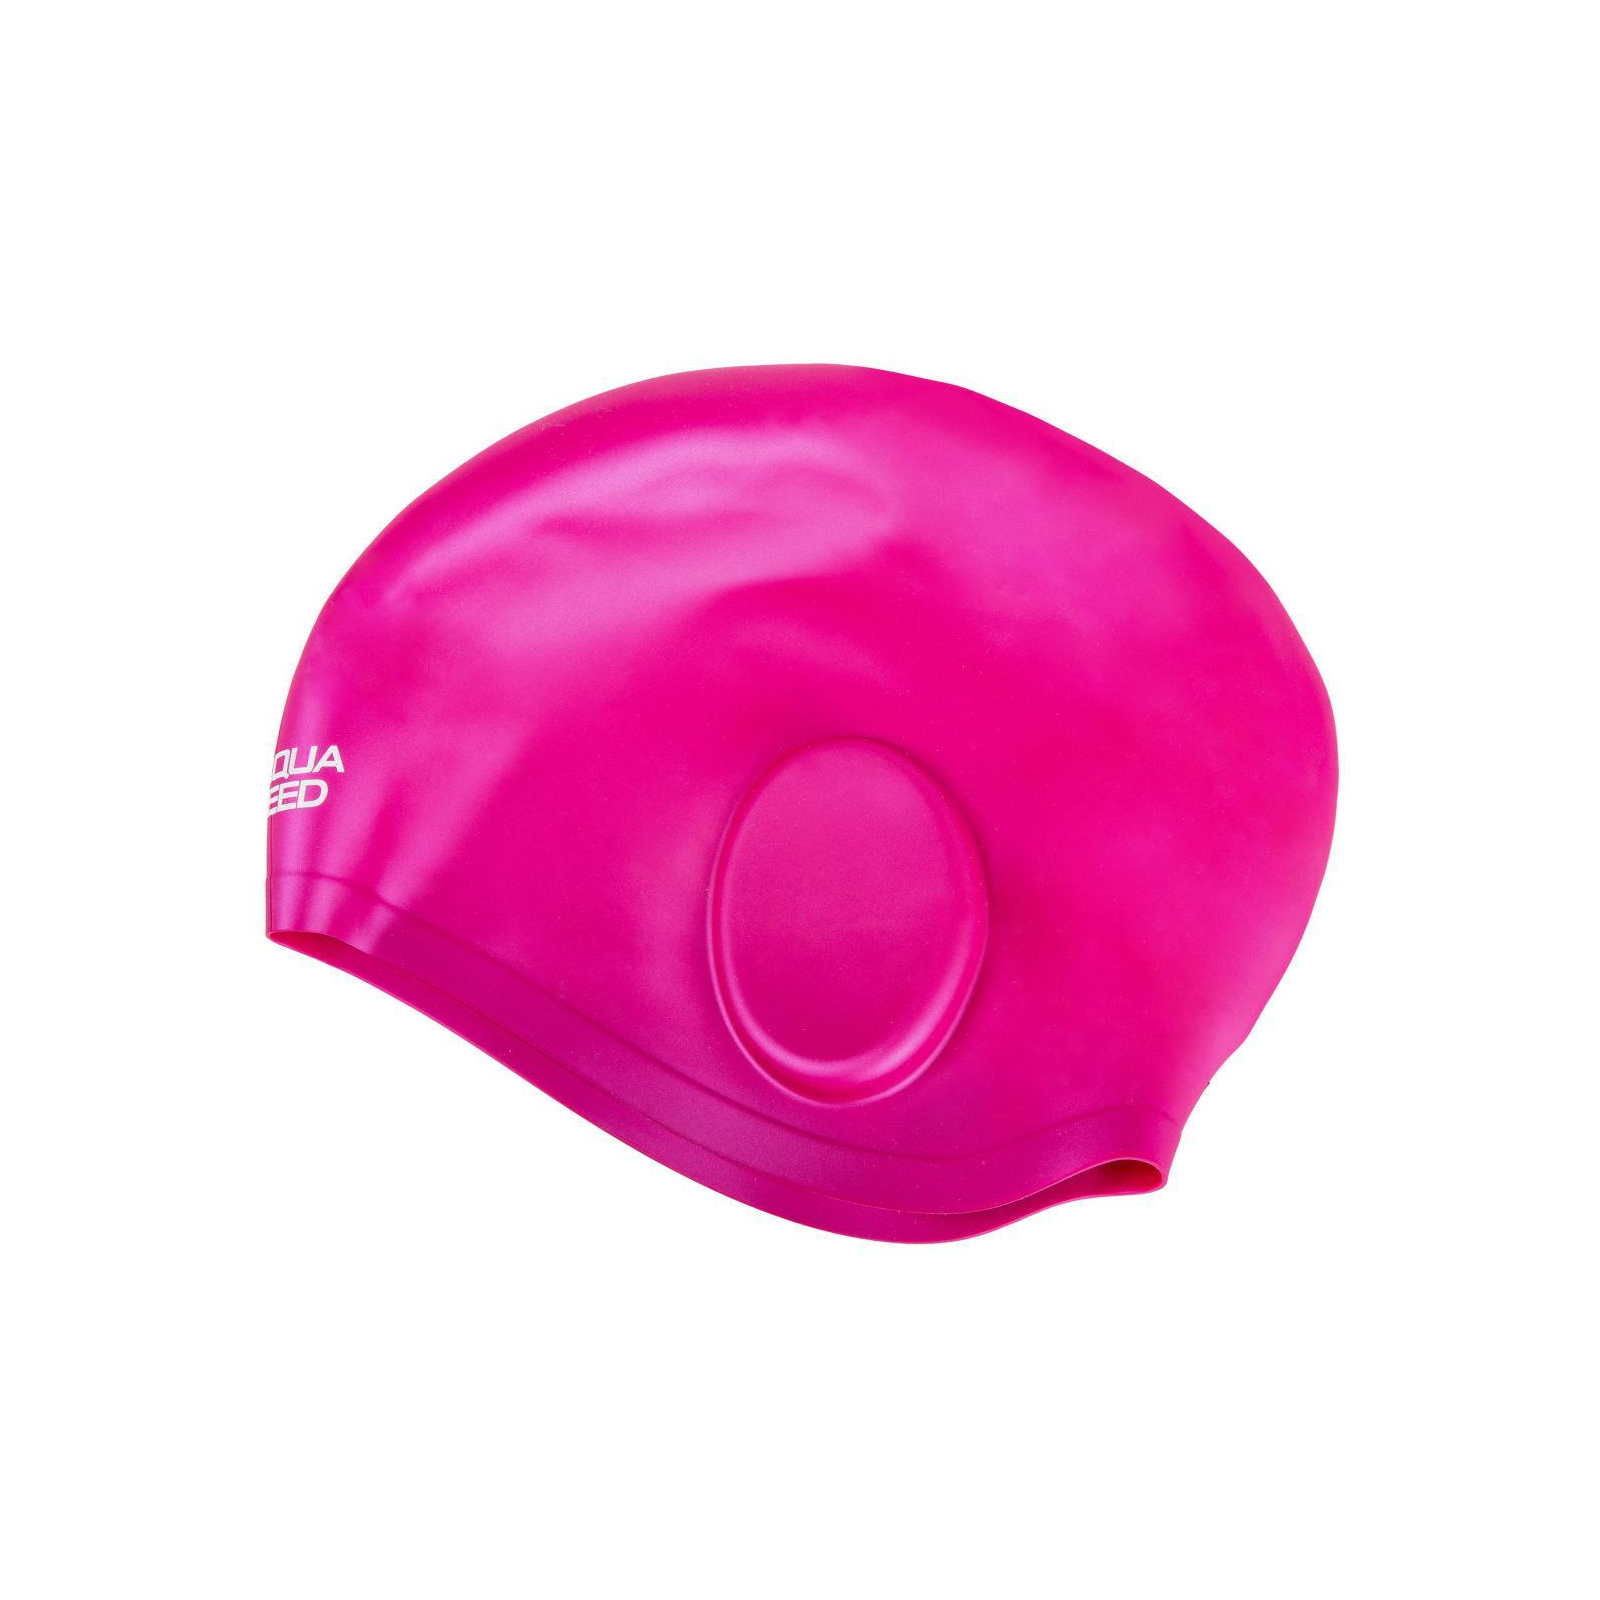 Шапка для плавання Aqua Speed Ear Cap Volume 60475 284-07 чорний Уні OSFM (5905718604753)